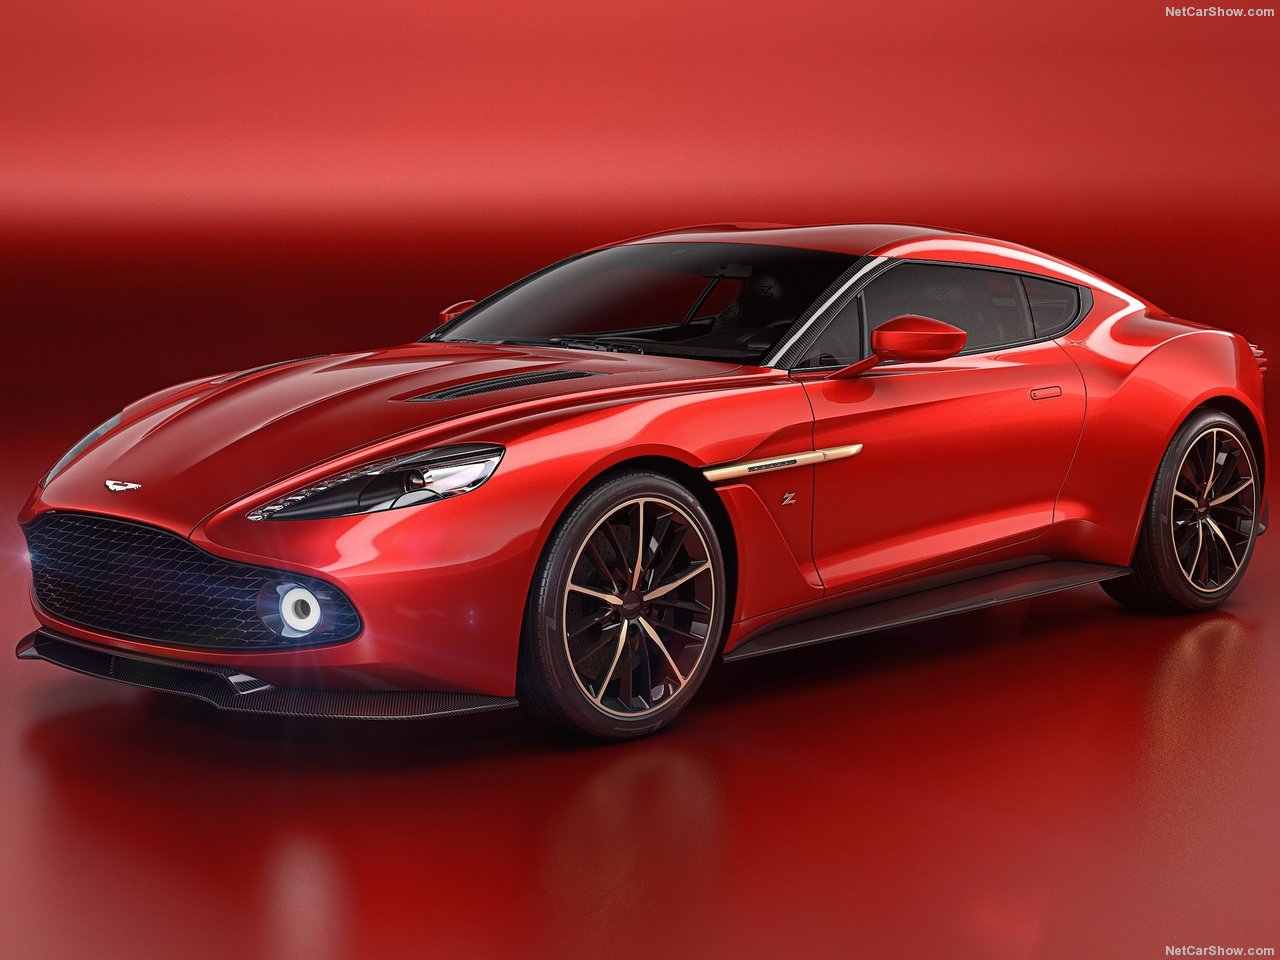 NFS - Need for Speed - Aston Martin Vanquish Zagato